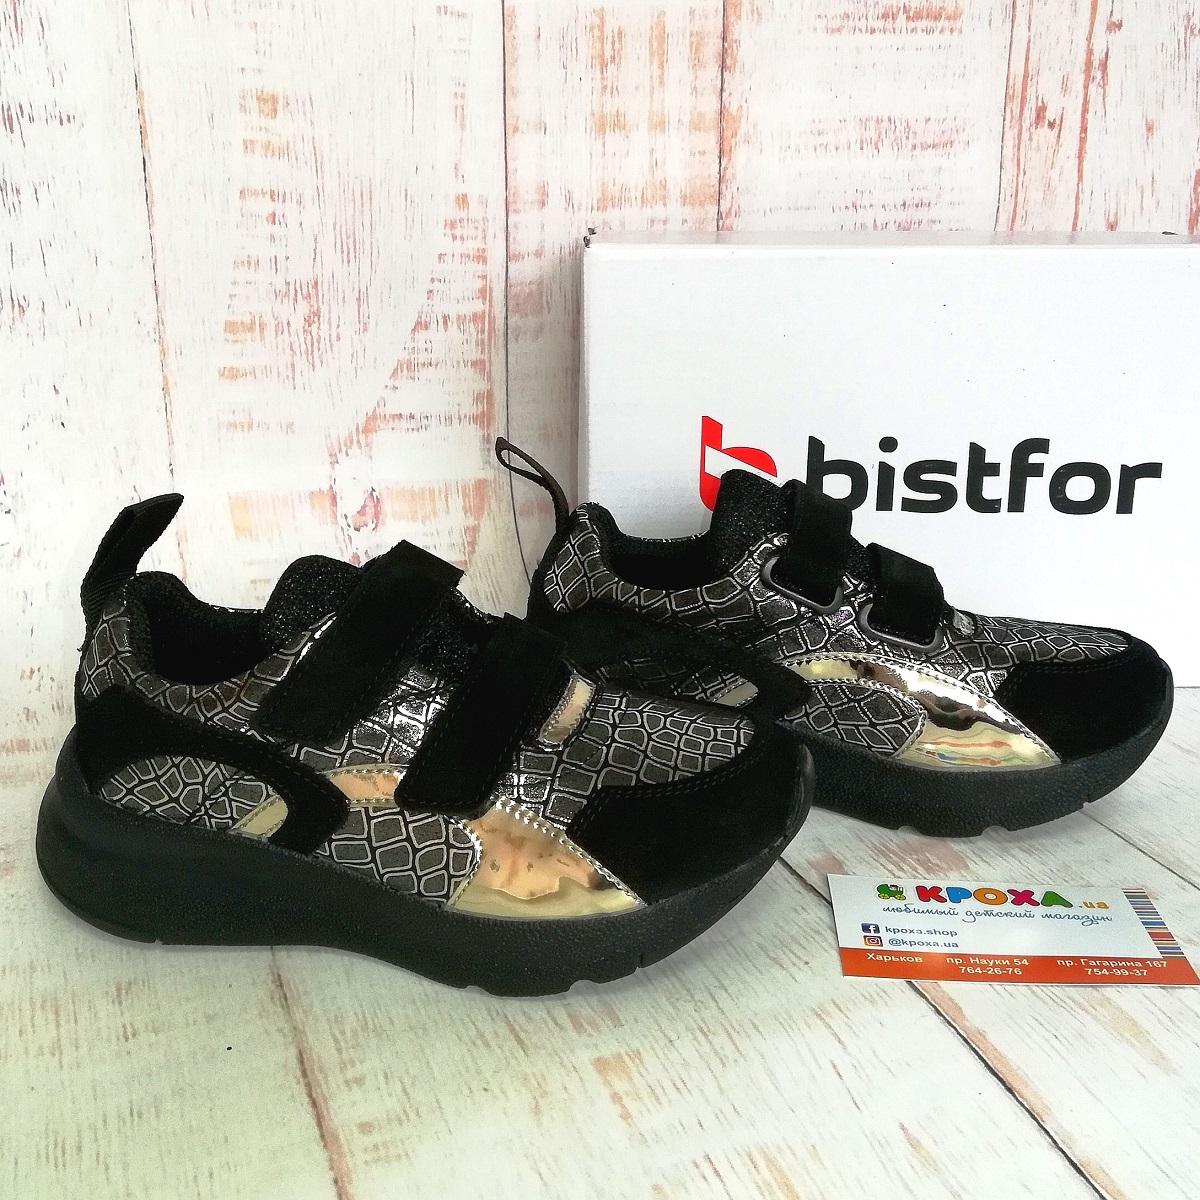 Дитячі кросівки для дівчинки, чорний-золото (97147/642/846, 95147/642/846), Bistfor